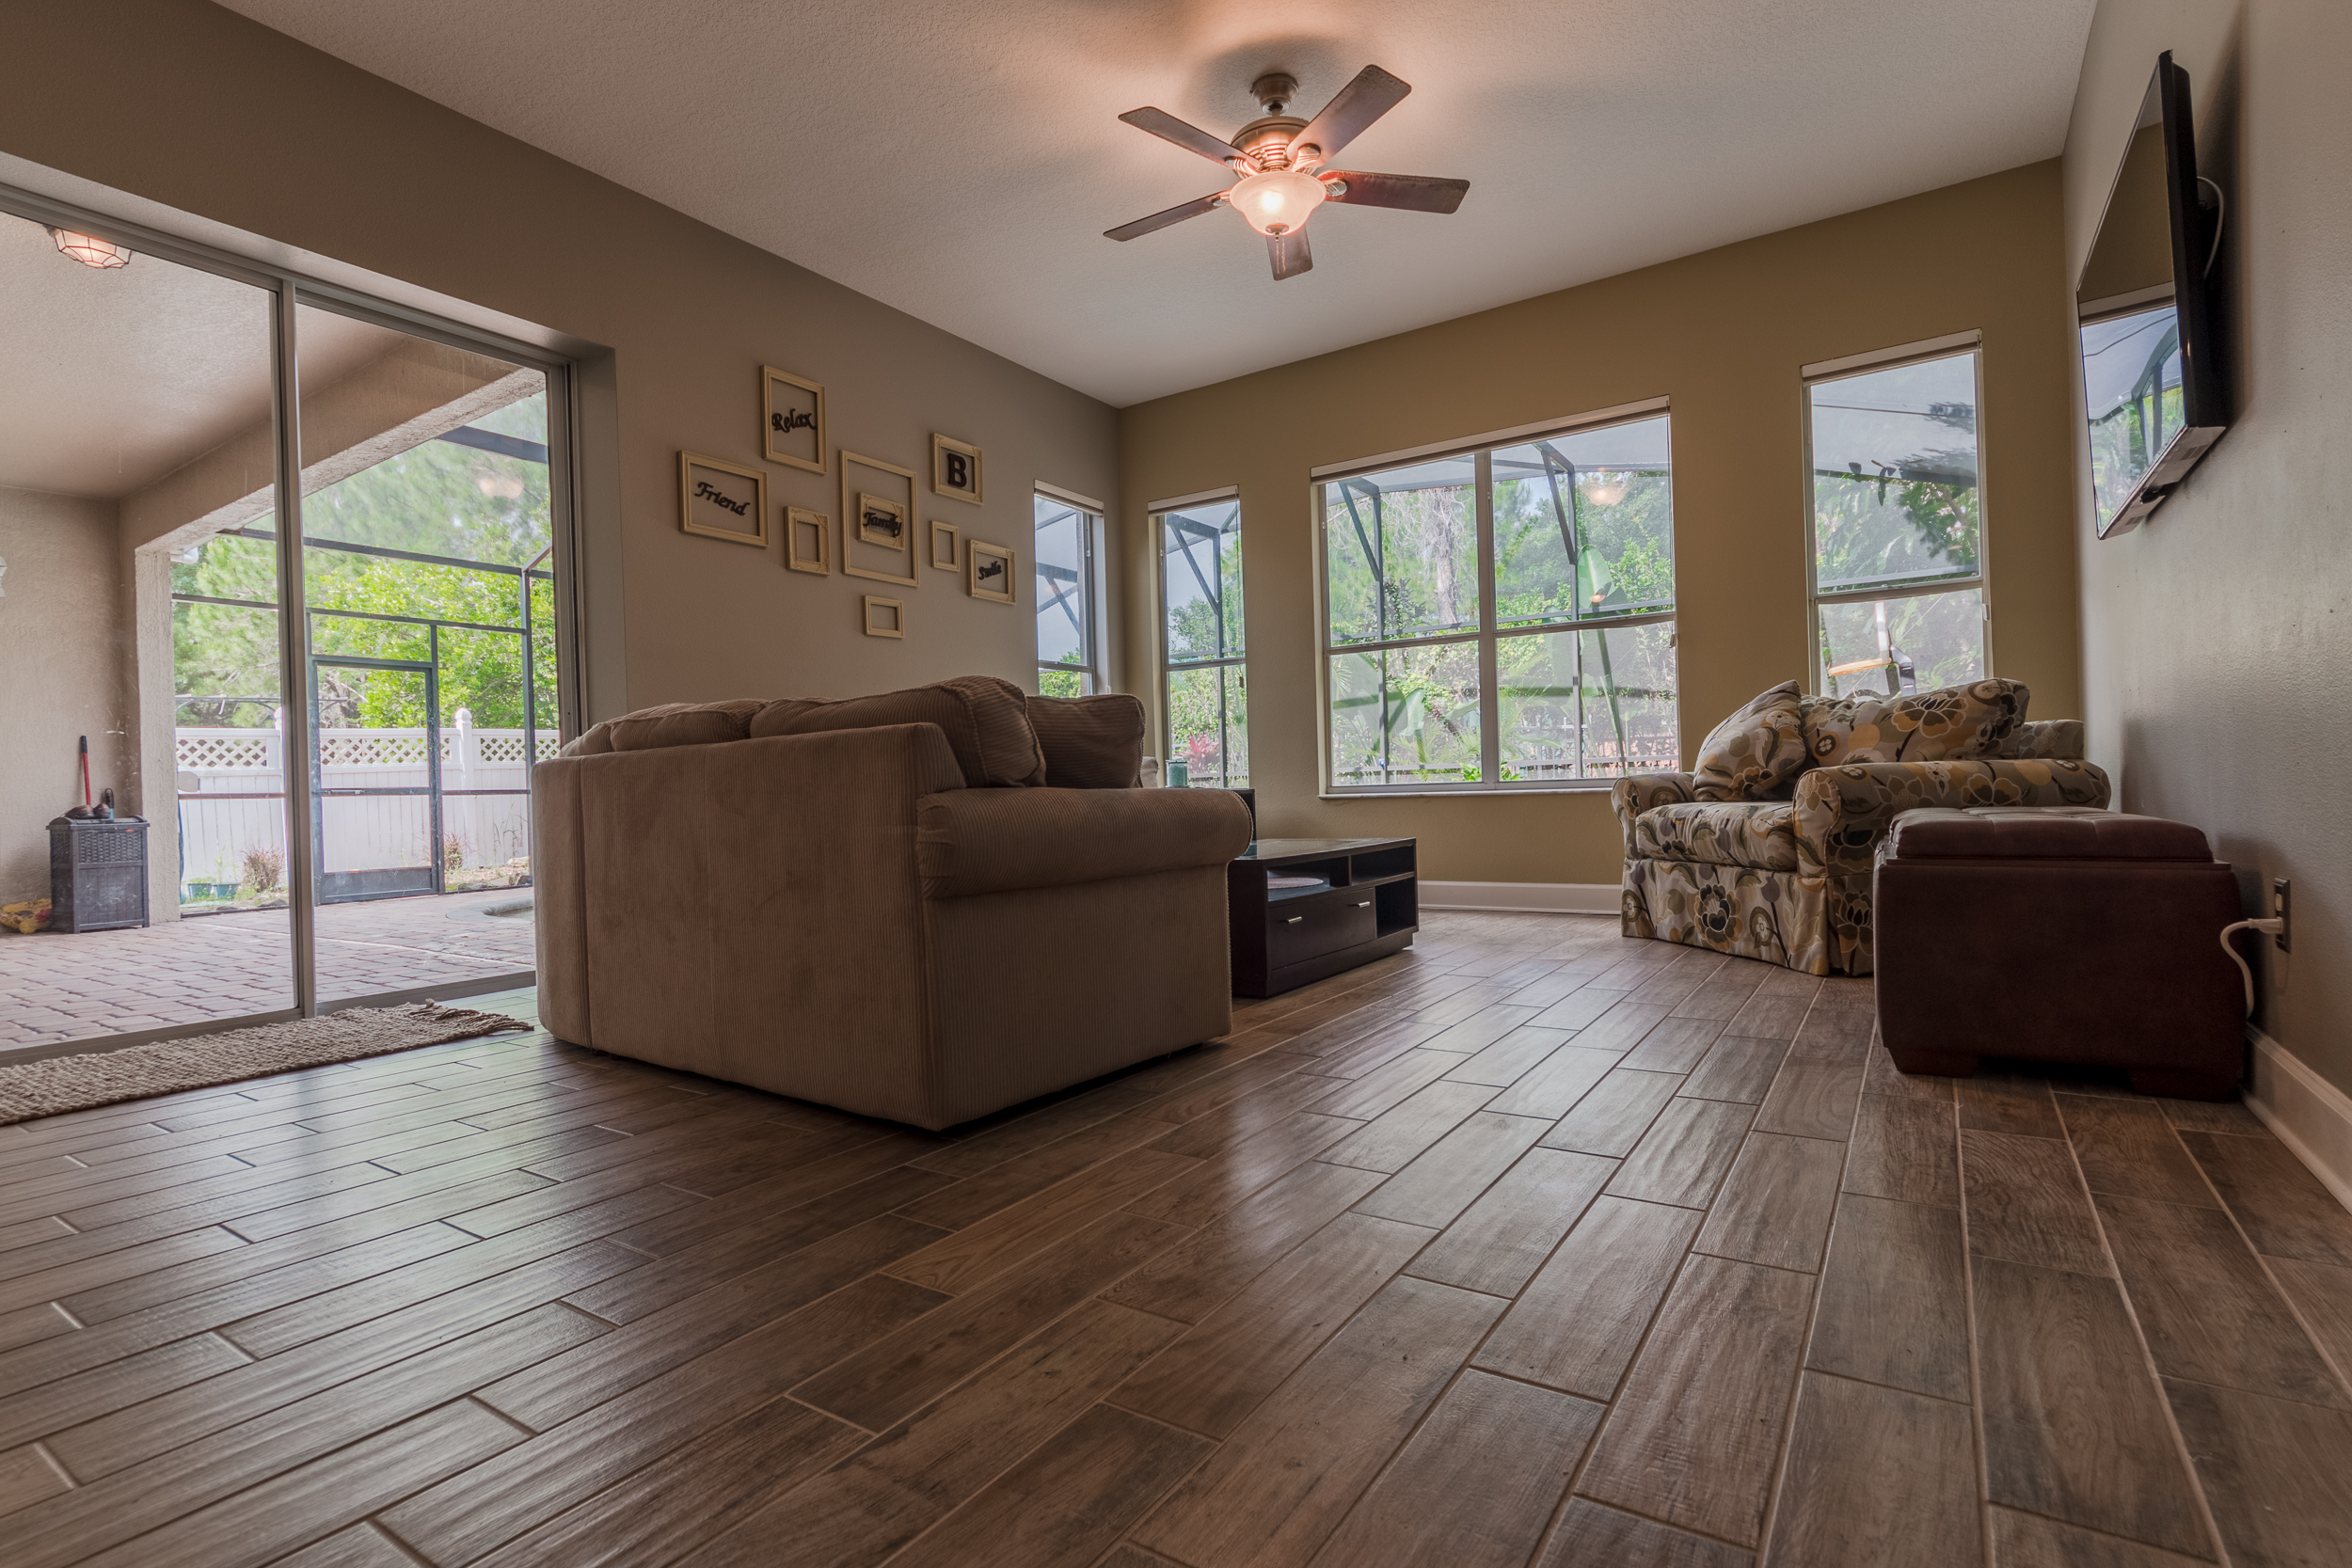 Wood-Look Tile Flooring in Livingroom